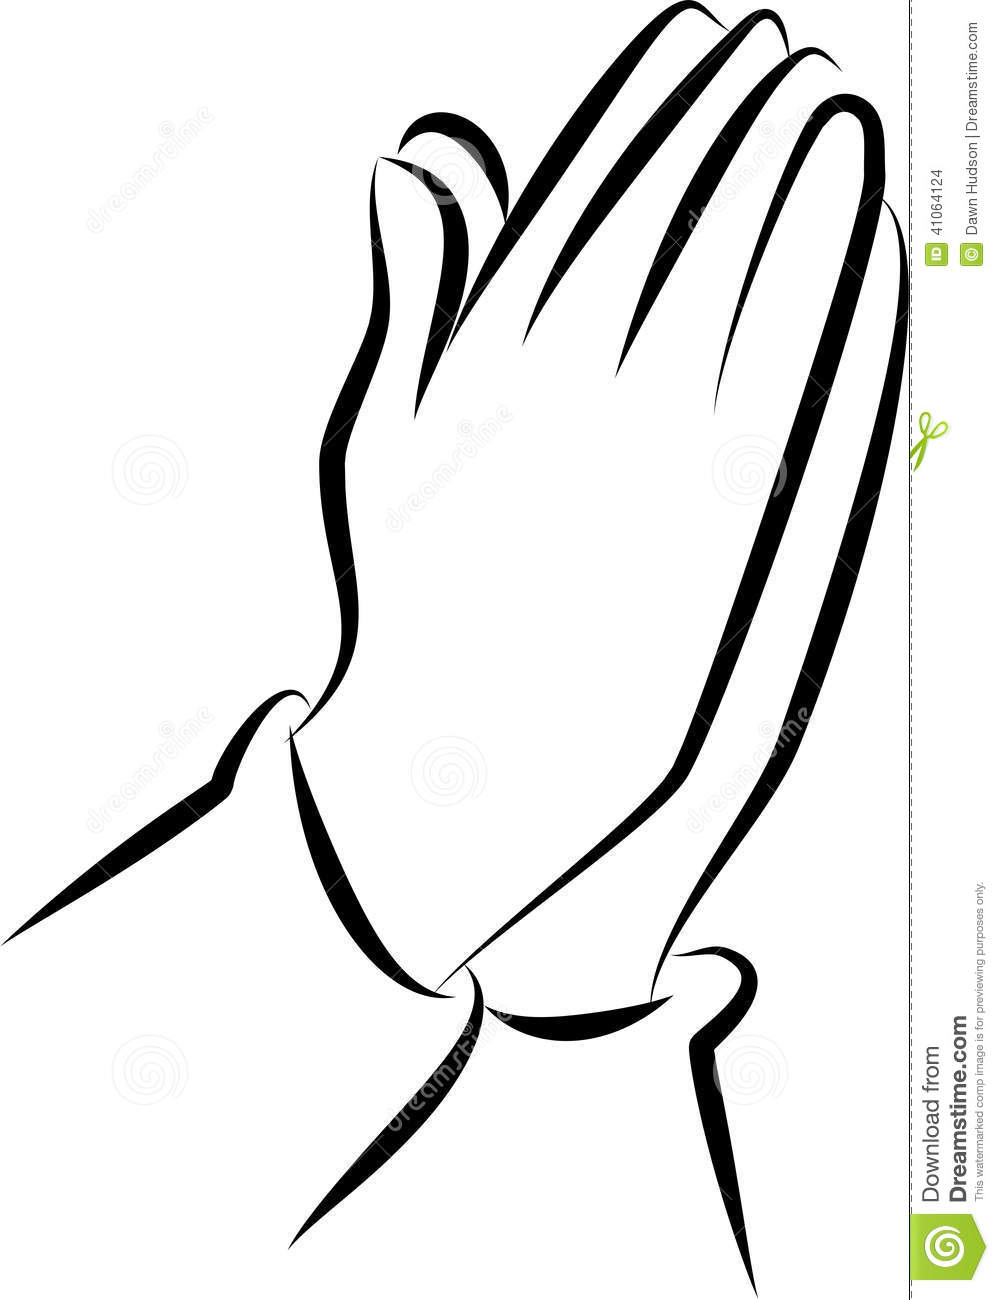 Open praying hands.